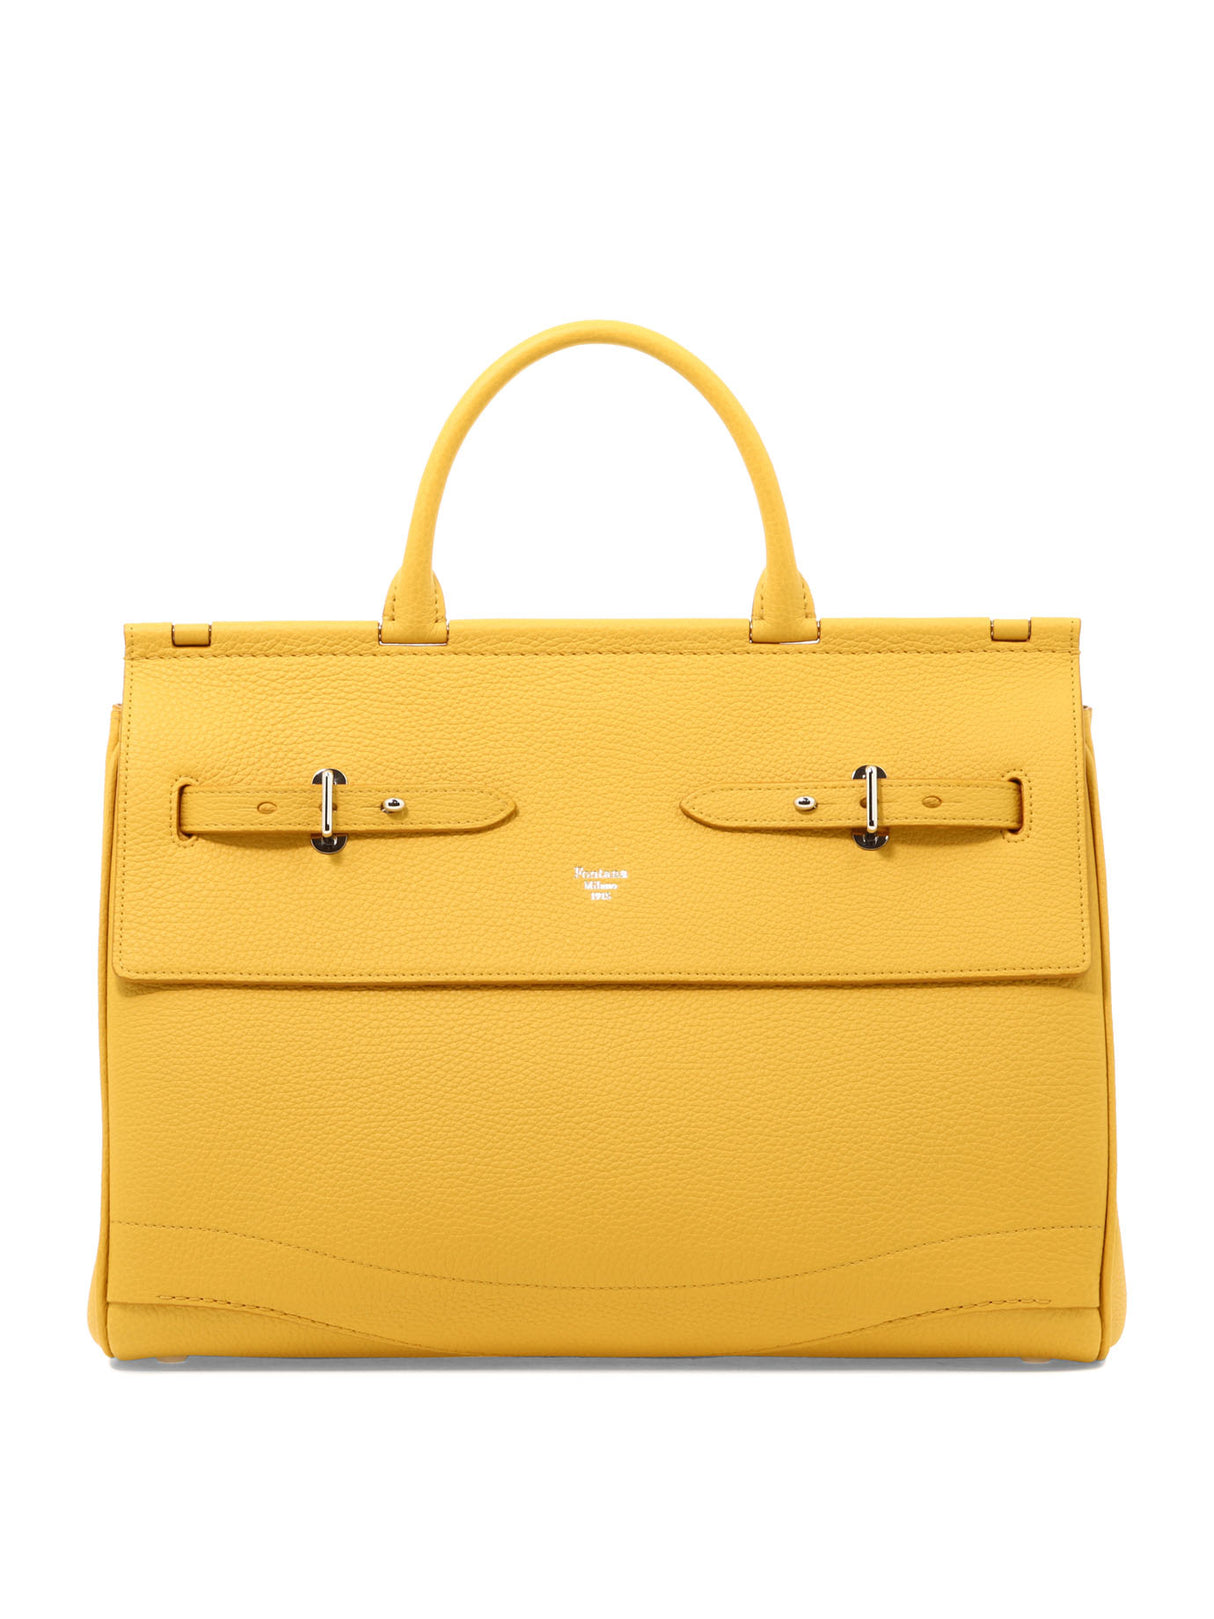 FONTANA MILANO 1915 Luxurious Yellow Handbag for Women - Spring/Summer 2023 Collection